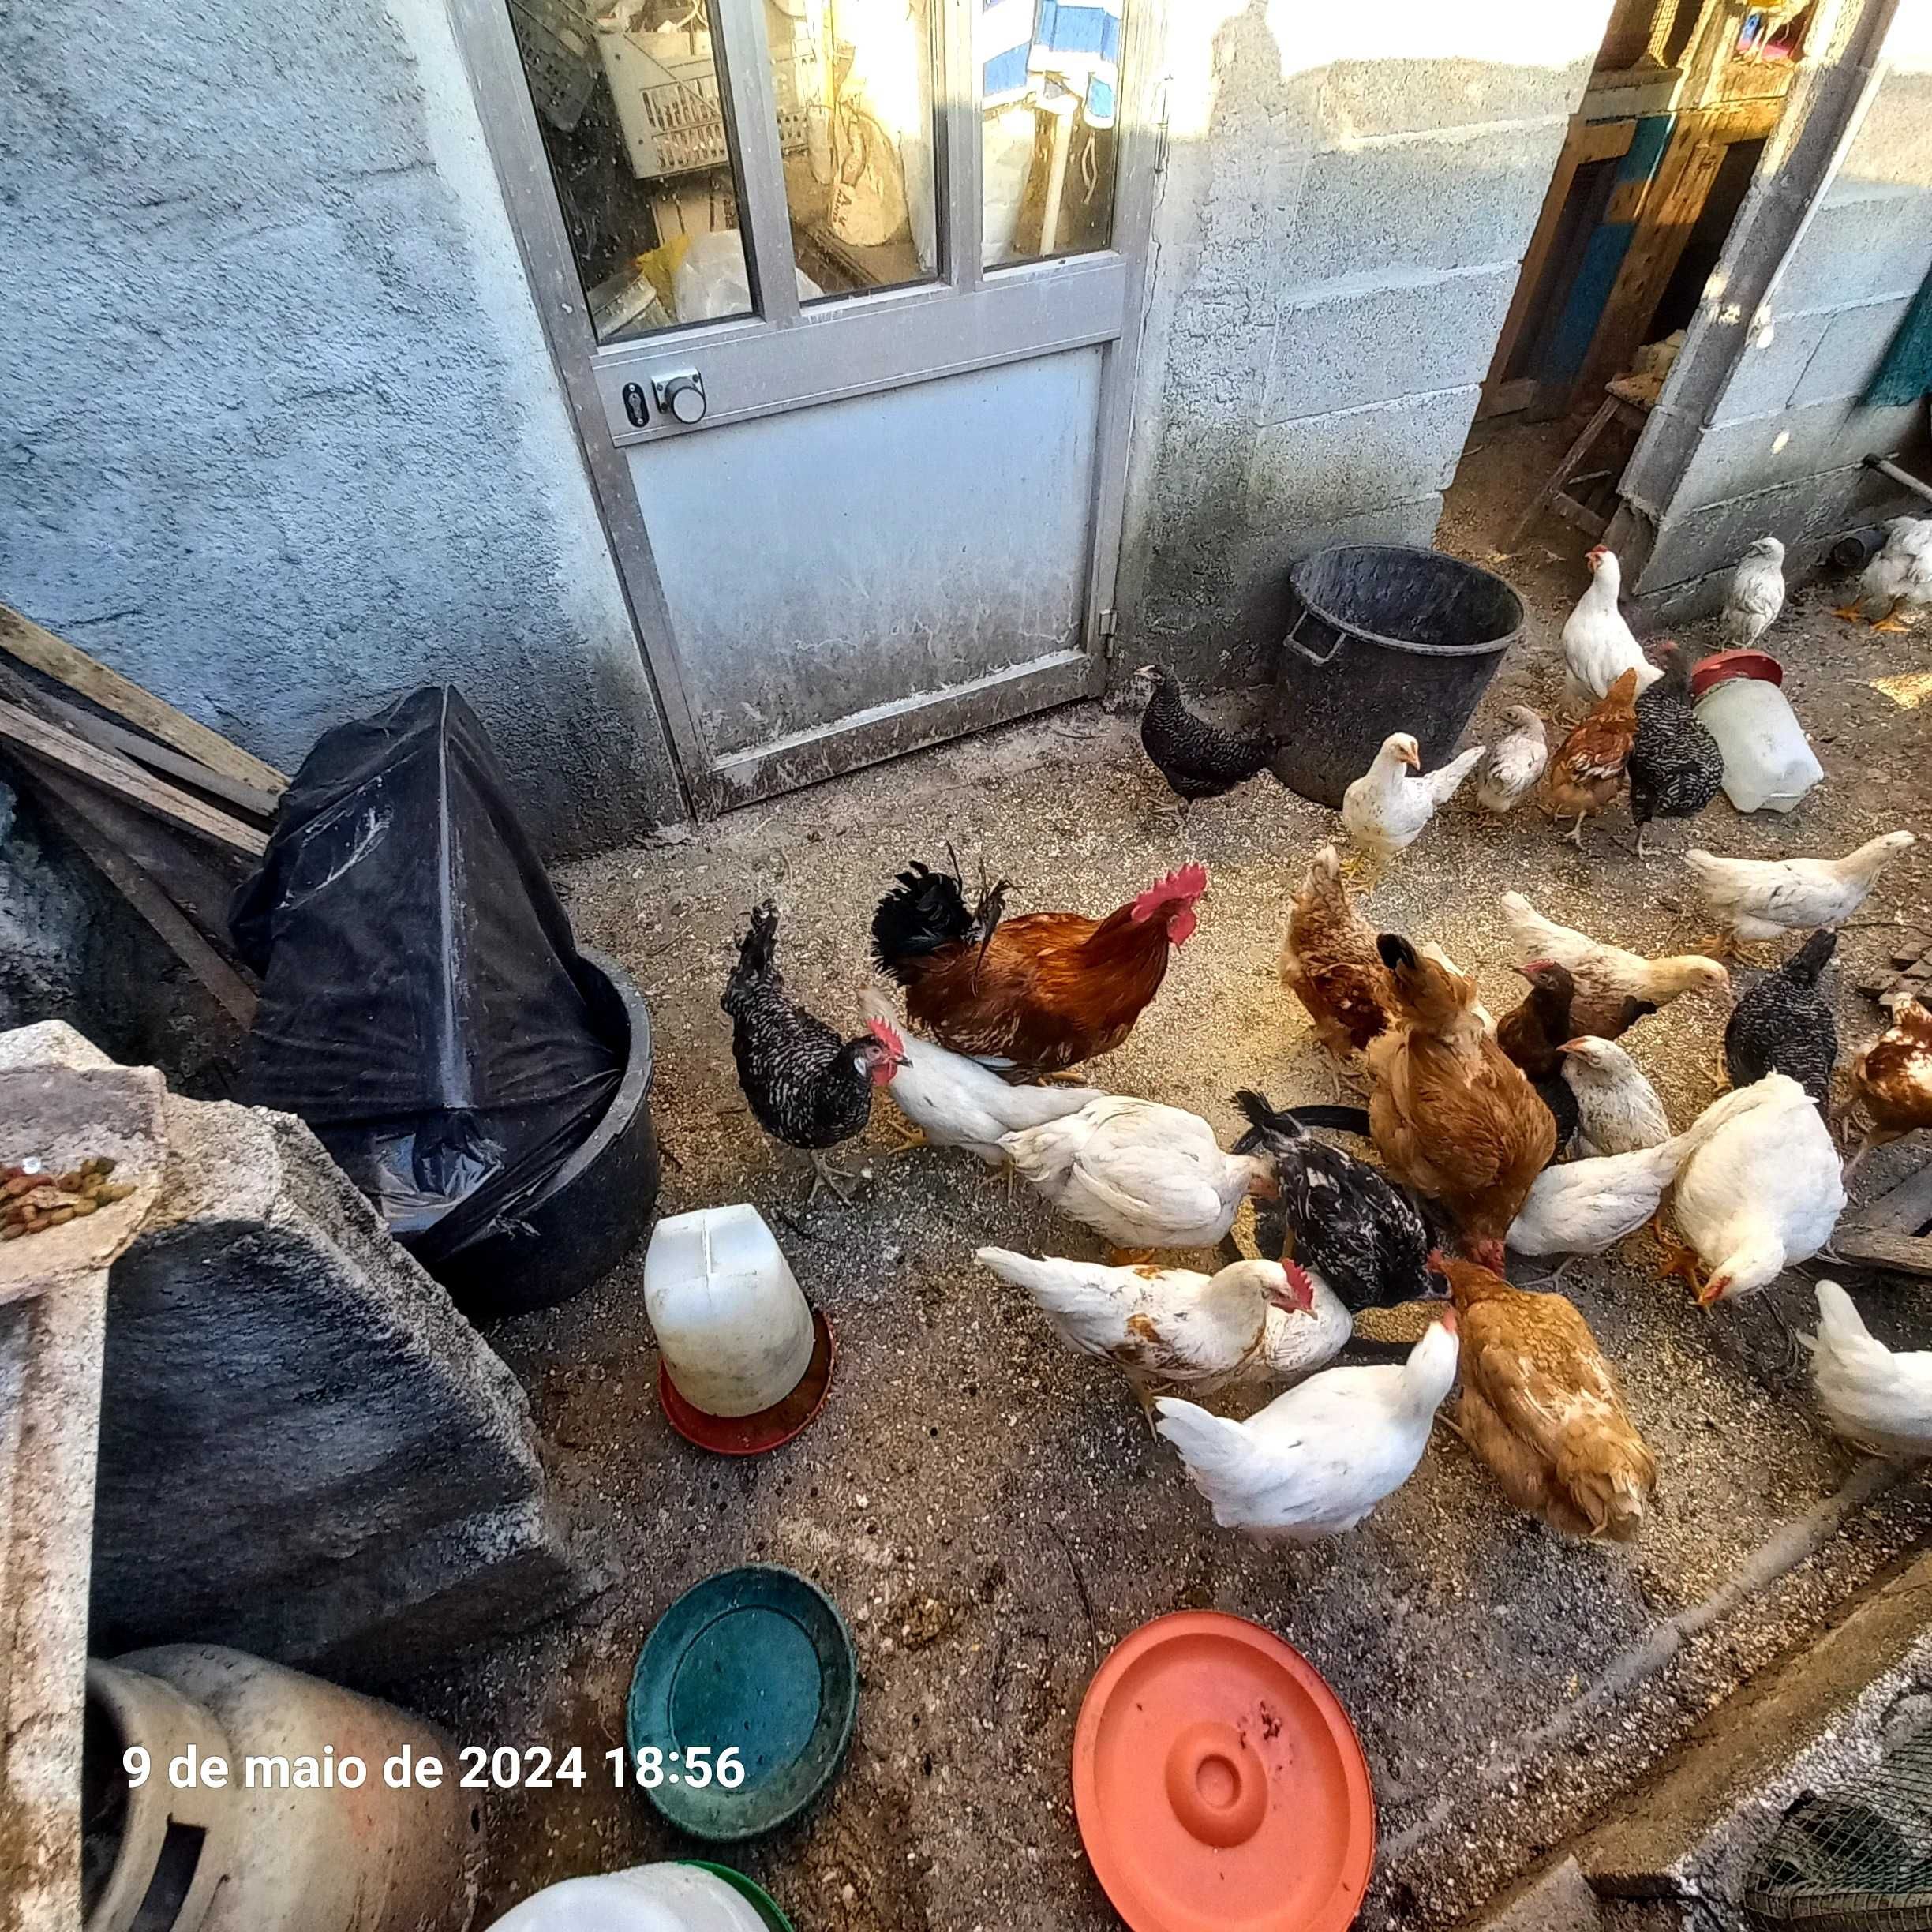 Vendo galinhas e galos sem raça defenida